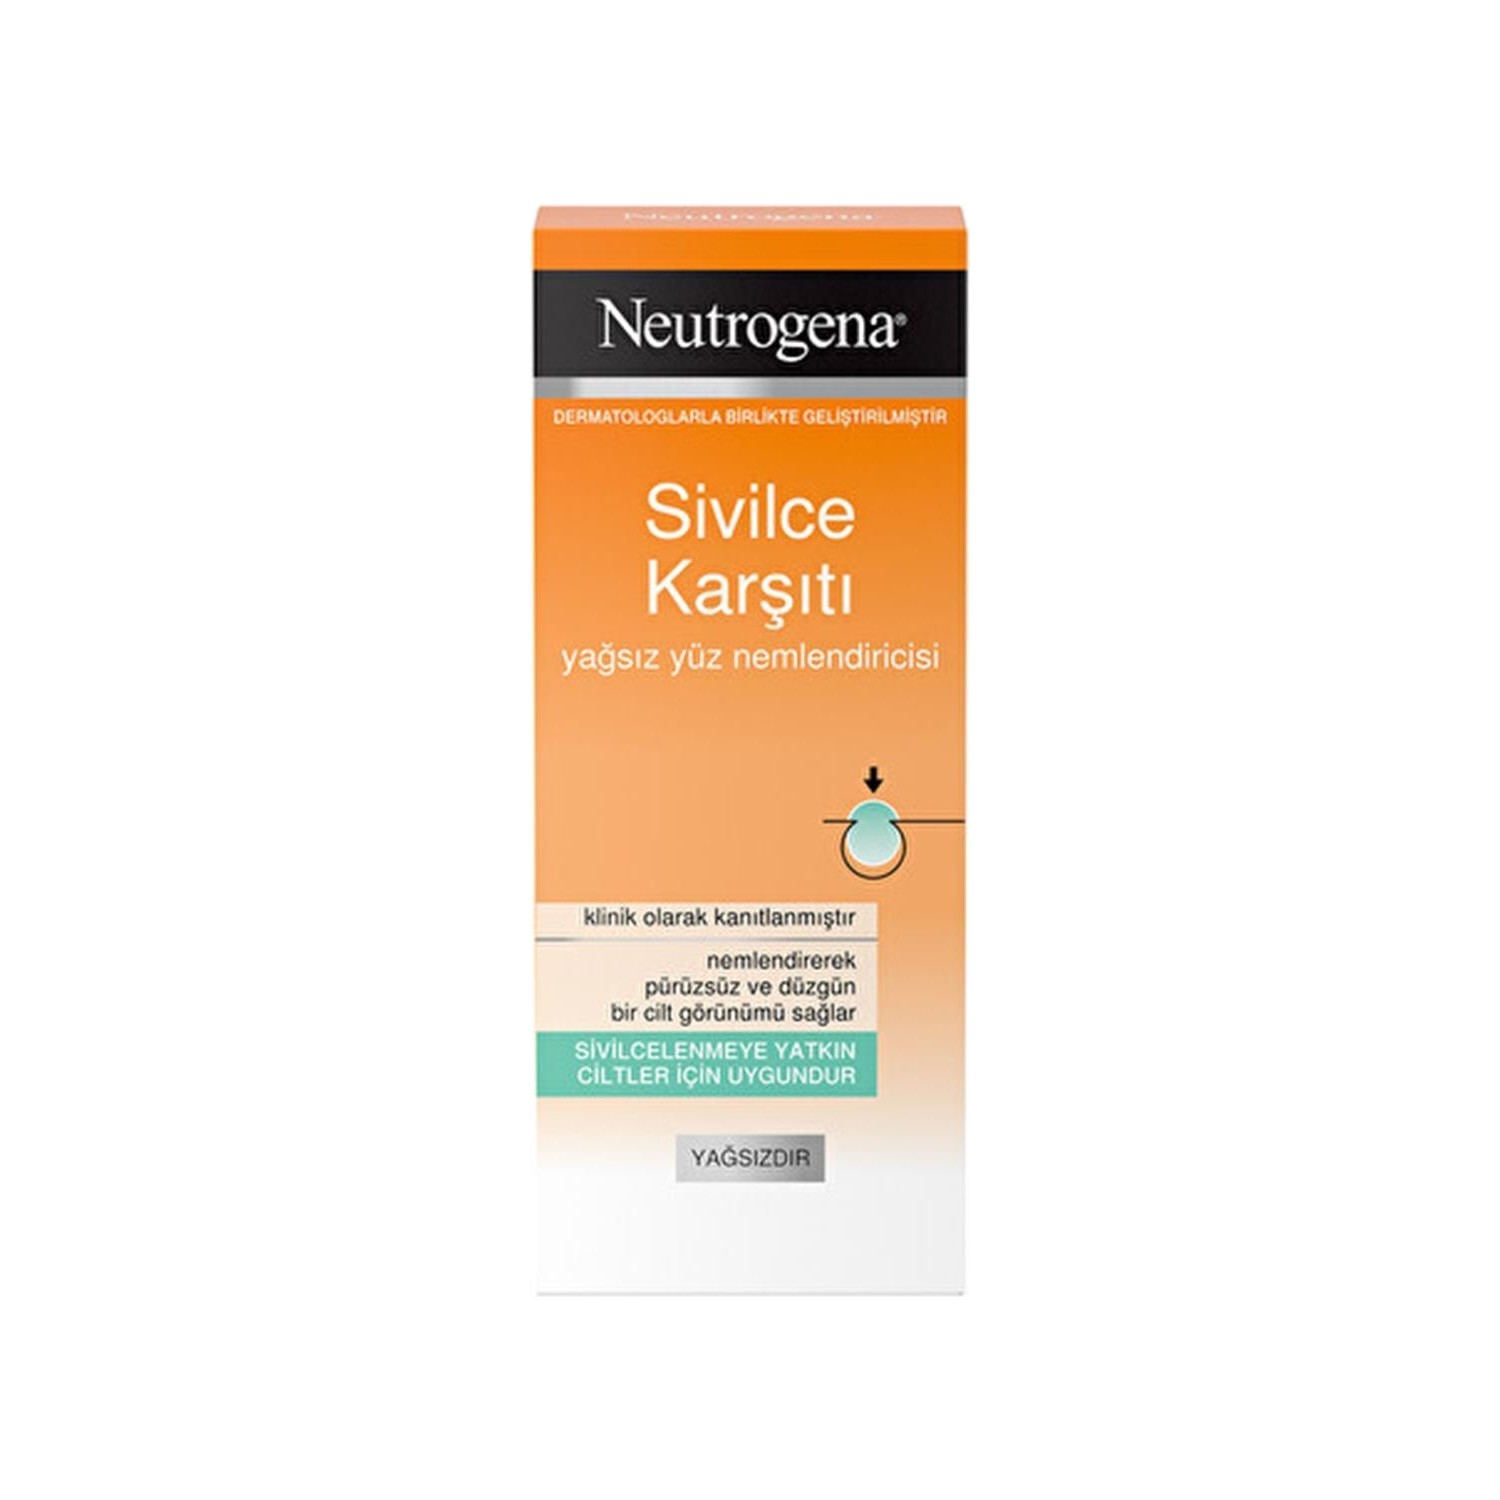 Увлажняющий крем Neutrogena, 50 мл увлажняющее средство для лица neutrogena 50 мл